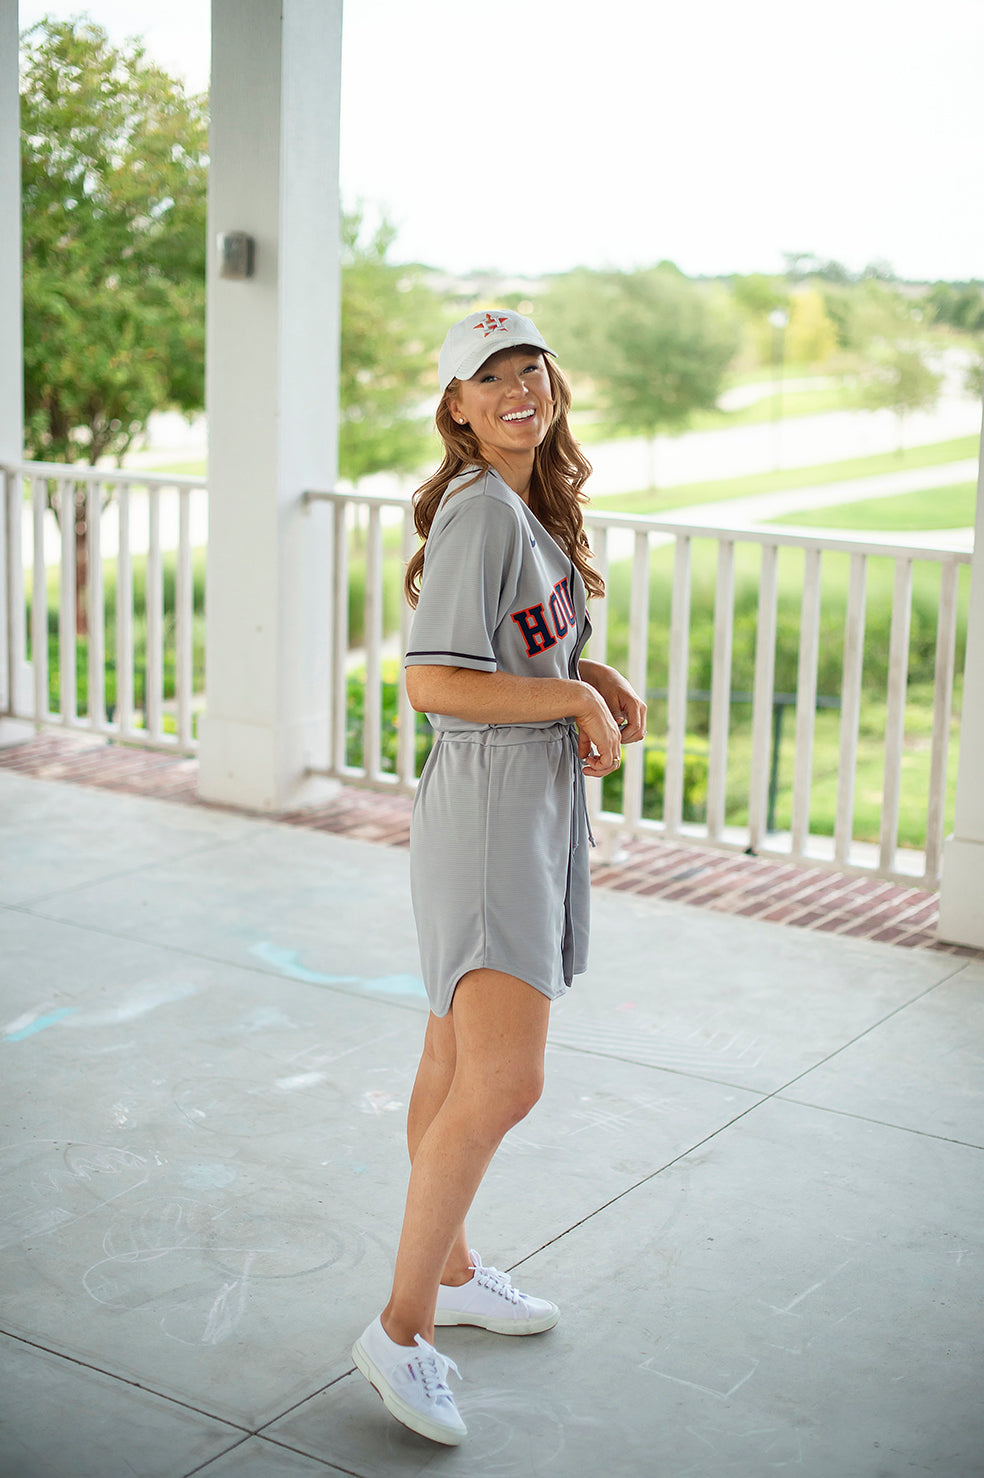 Baseball jersey outfit fashion street wear  Baseball jersey outfit, Baseball  jersey outfit fashion, Baseball jersey outfit women